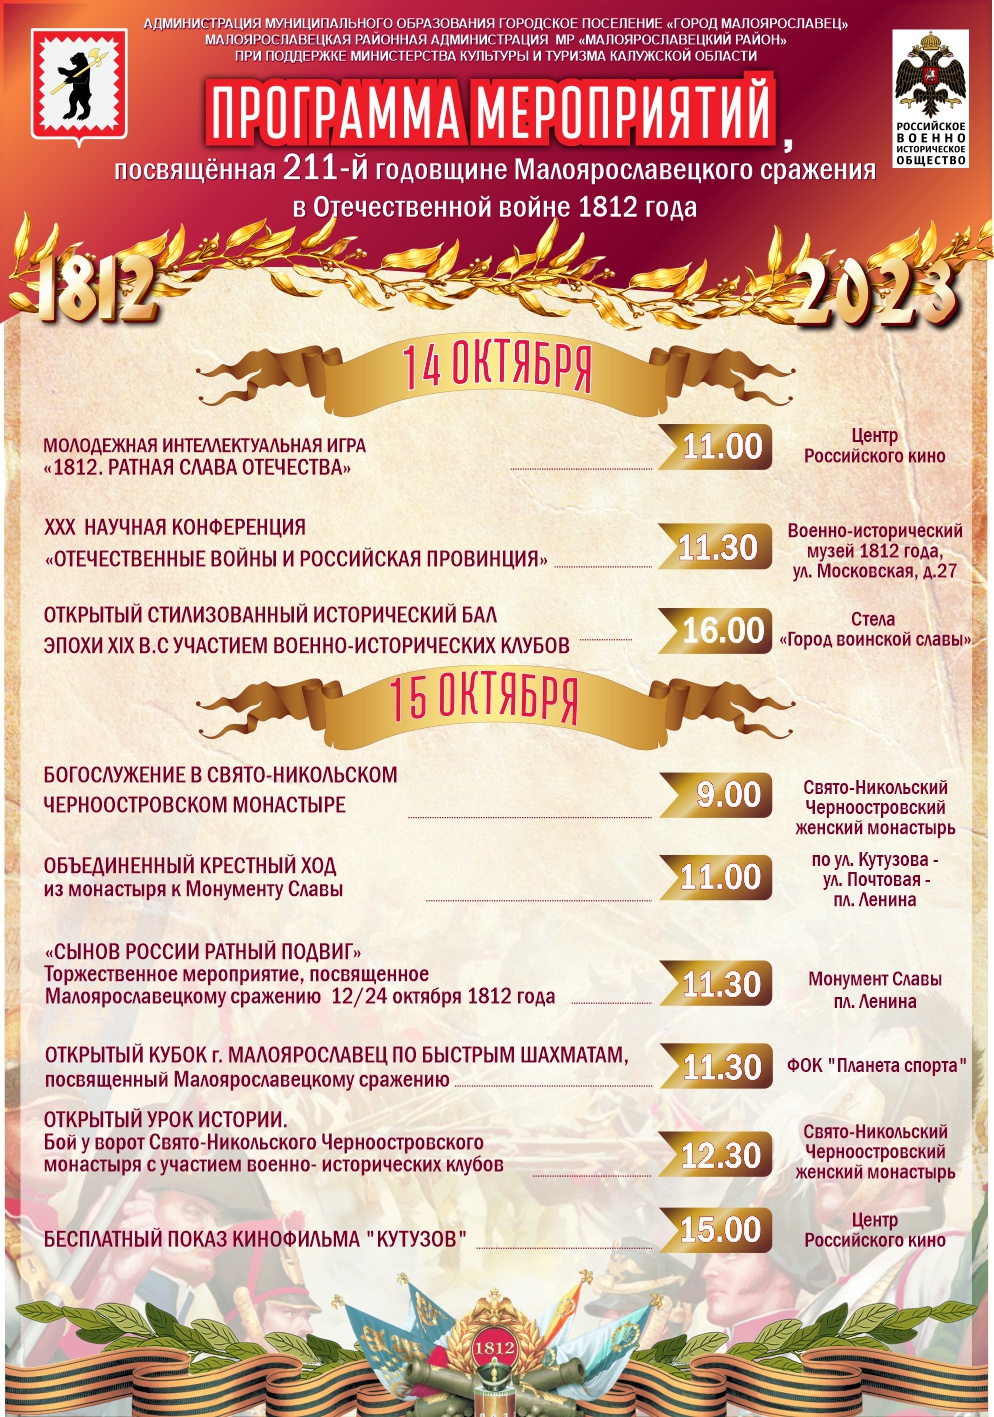 Программа мероприятий, посвященных 211-й годовщине Малоярославецкого сражения в Отечественной войне 1812 года.